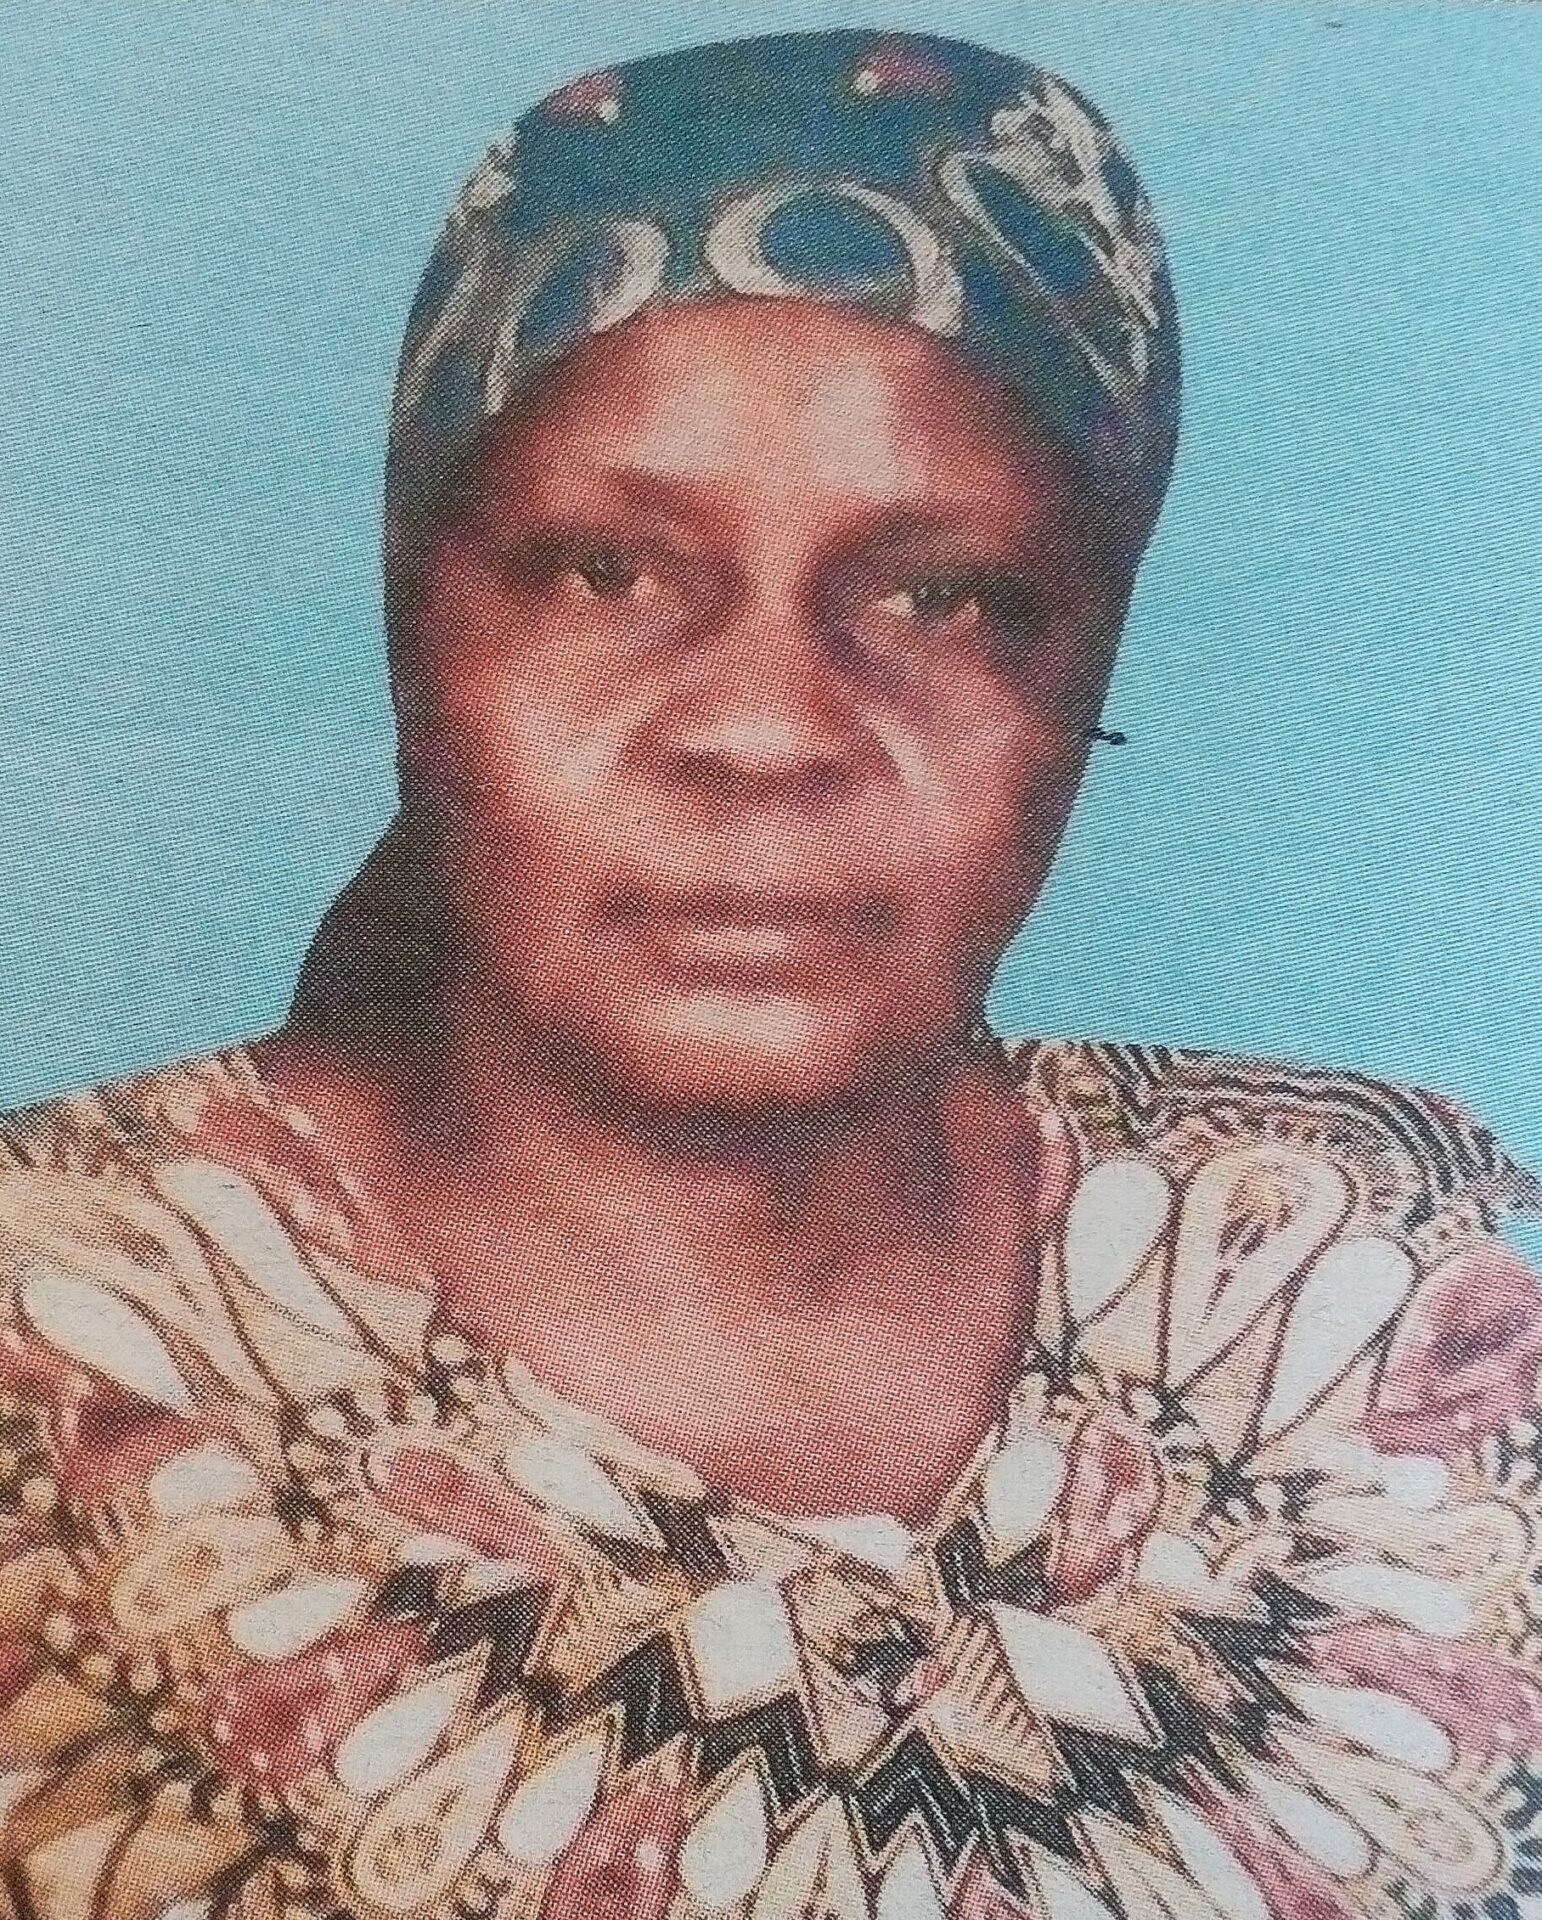 Obituary Image of Felgona Okech